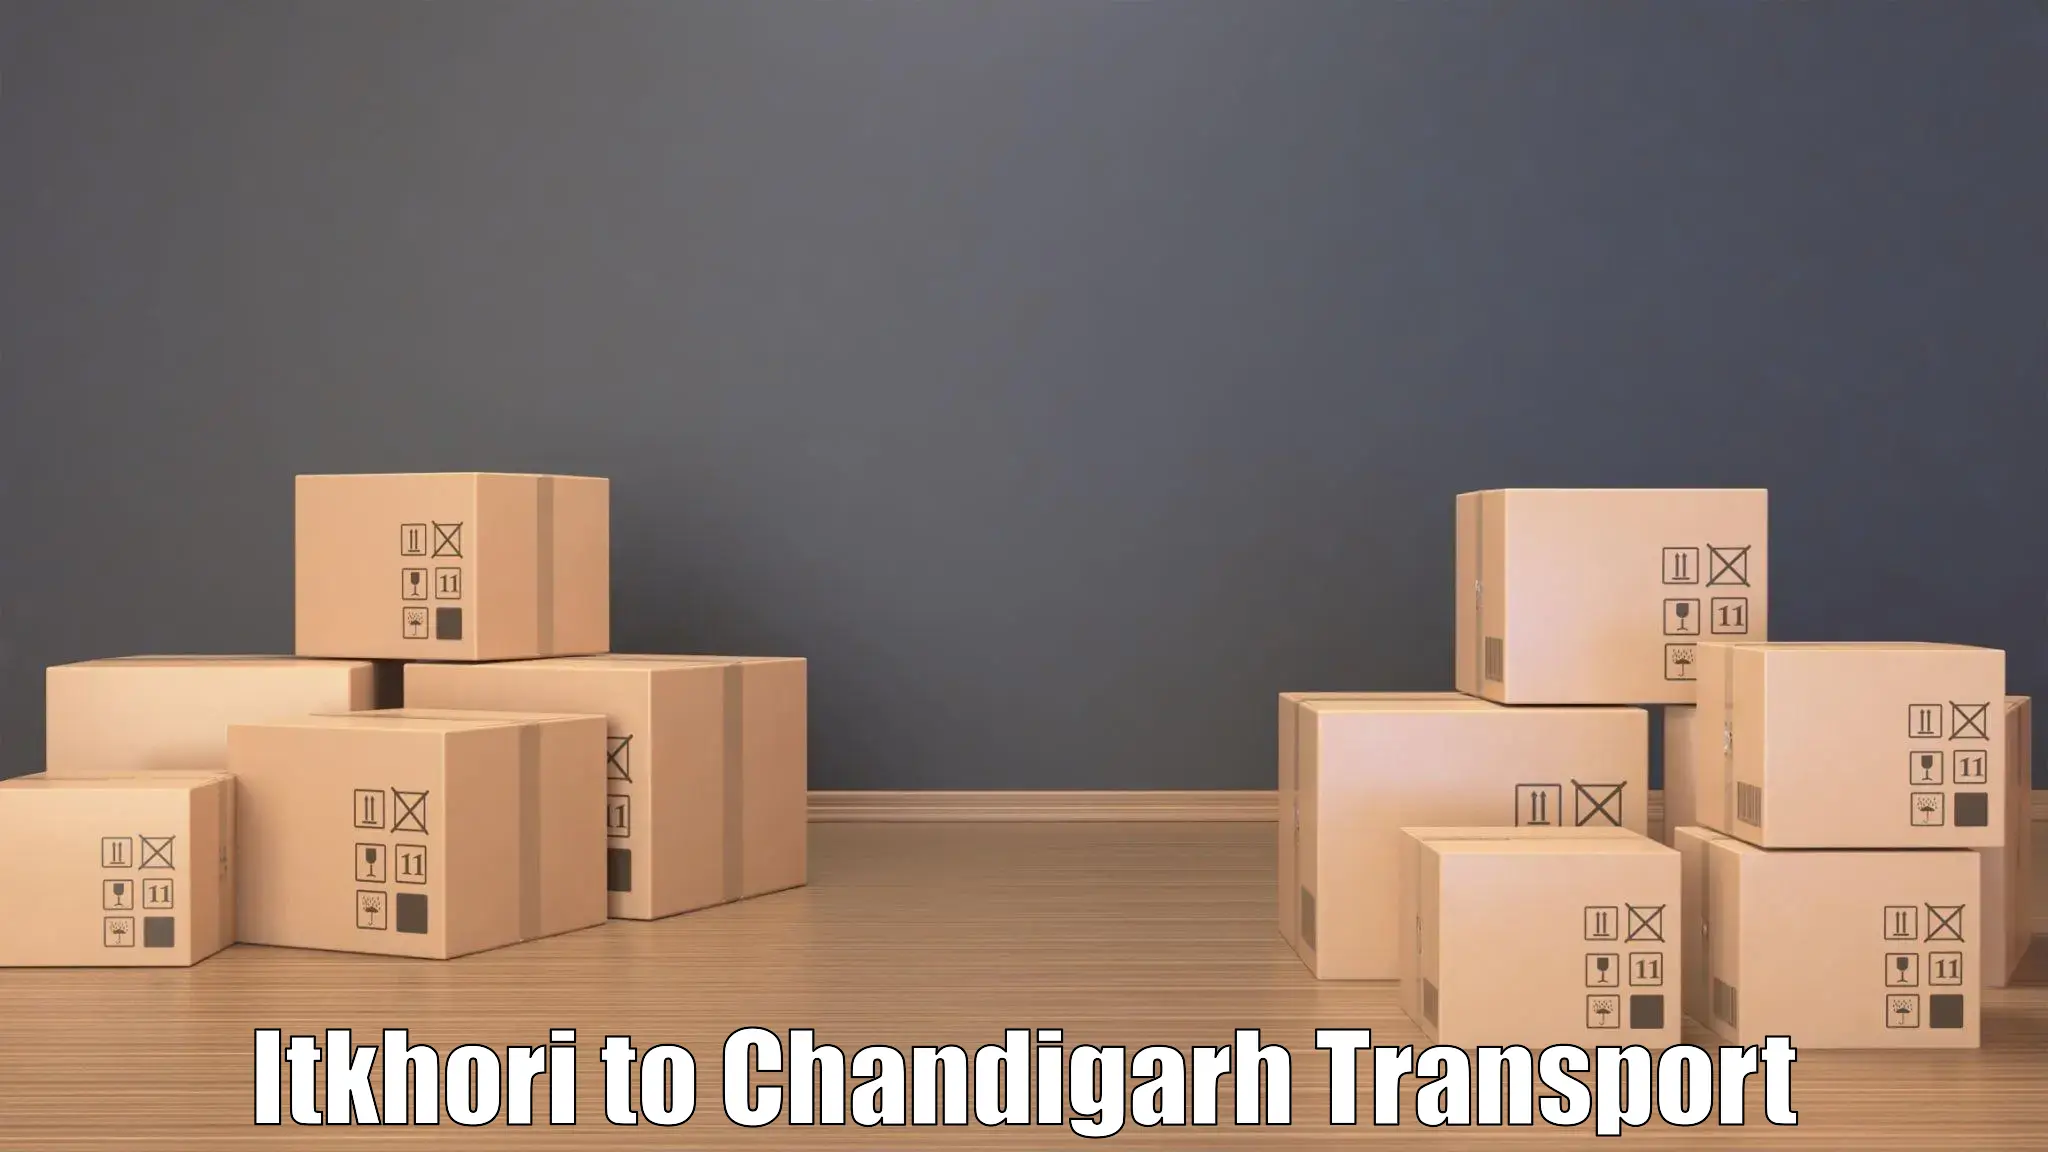 Daily transport service Itkhori to Chandigarh